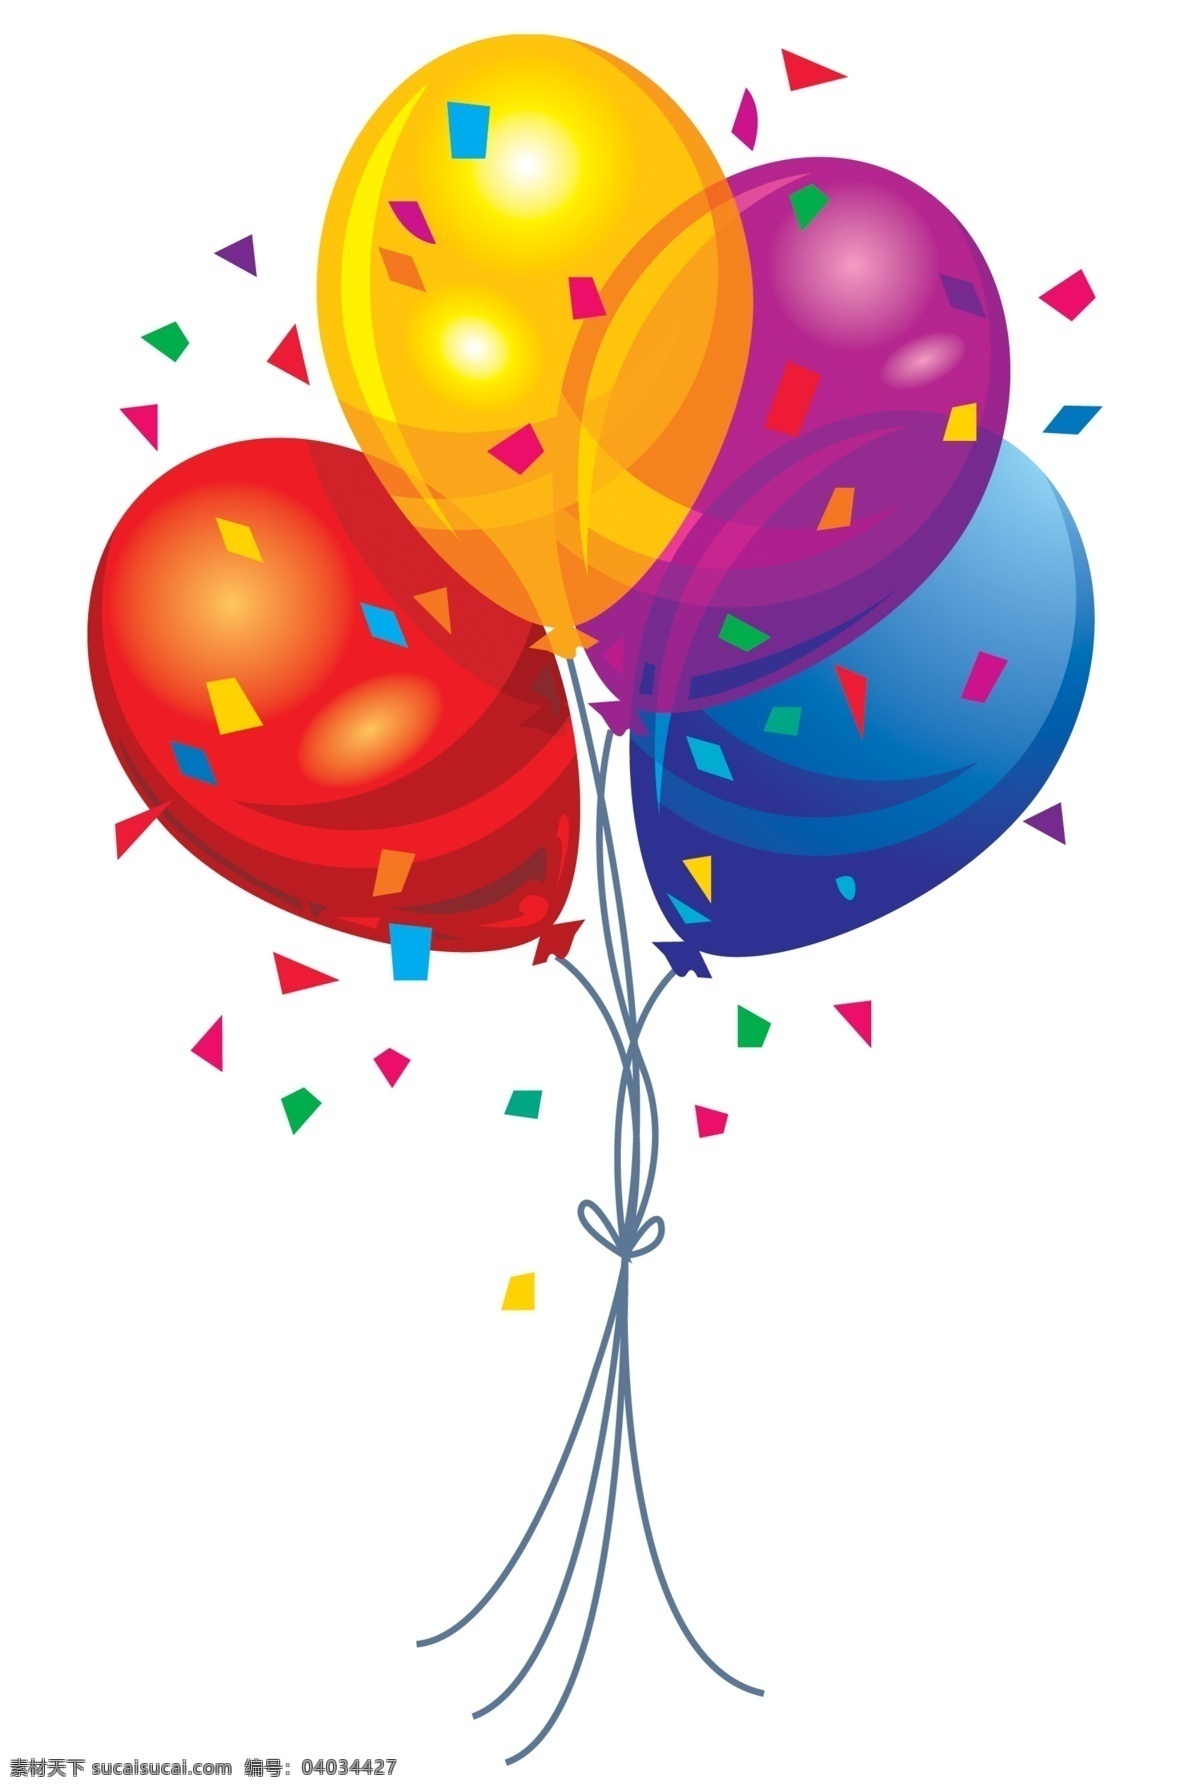 气球图片 气球 矢量气球 卡通气球 彩色气球 手绘气球 气球插画 气球背景 喜庆元素 喜庆素材 节日元素 节日素材 生日元素 生日素材 生日气球 光晕背景 温馨背景